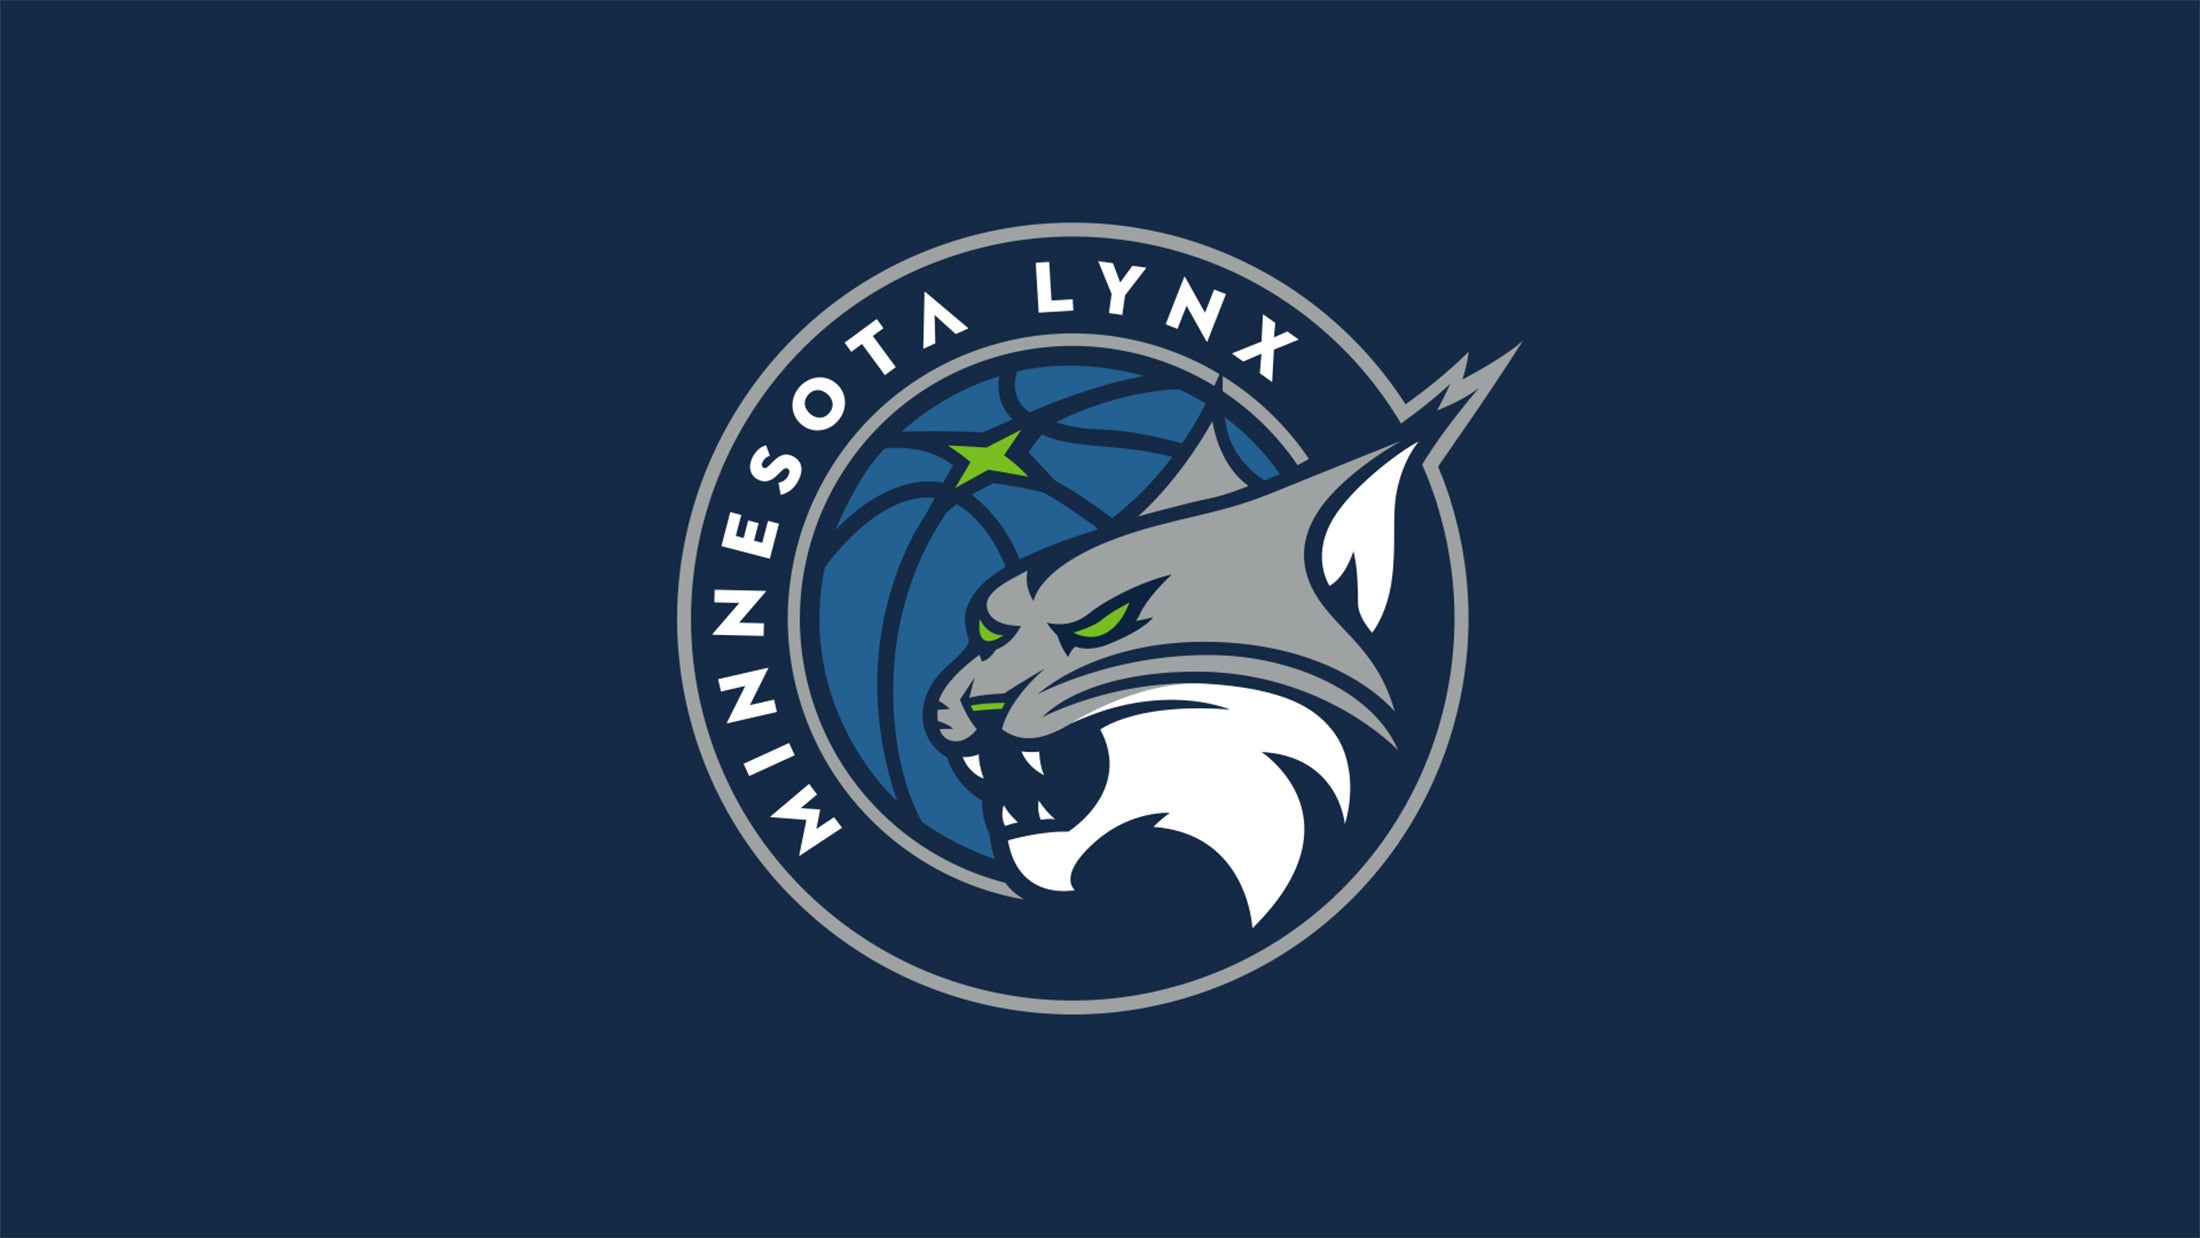 Minnesota Lynx vs. Dallas Wings at Target Center